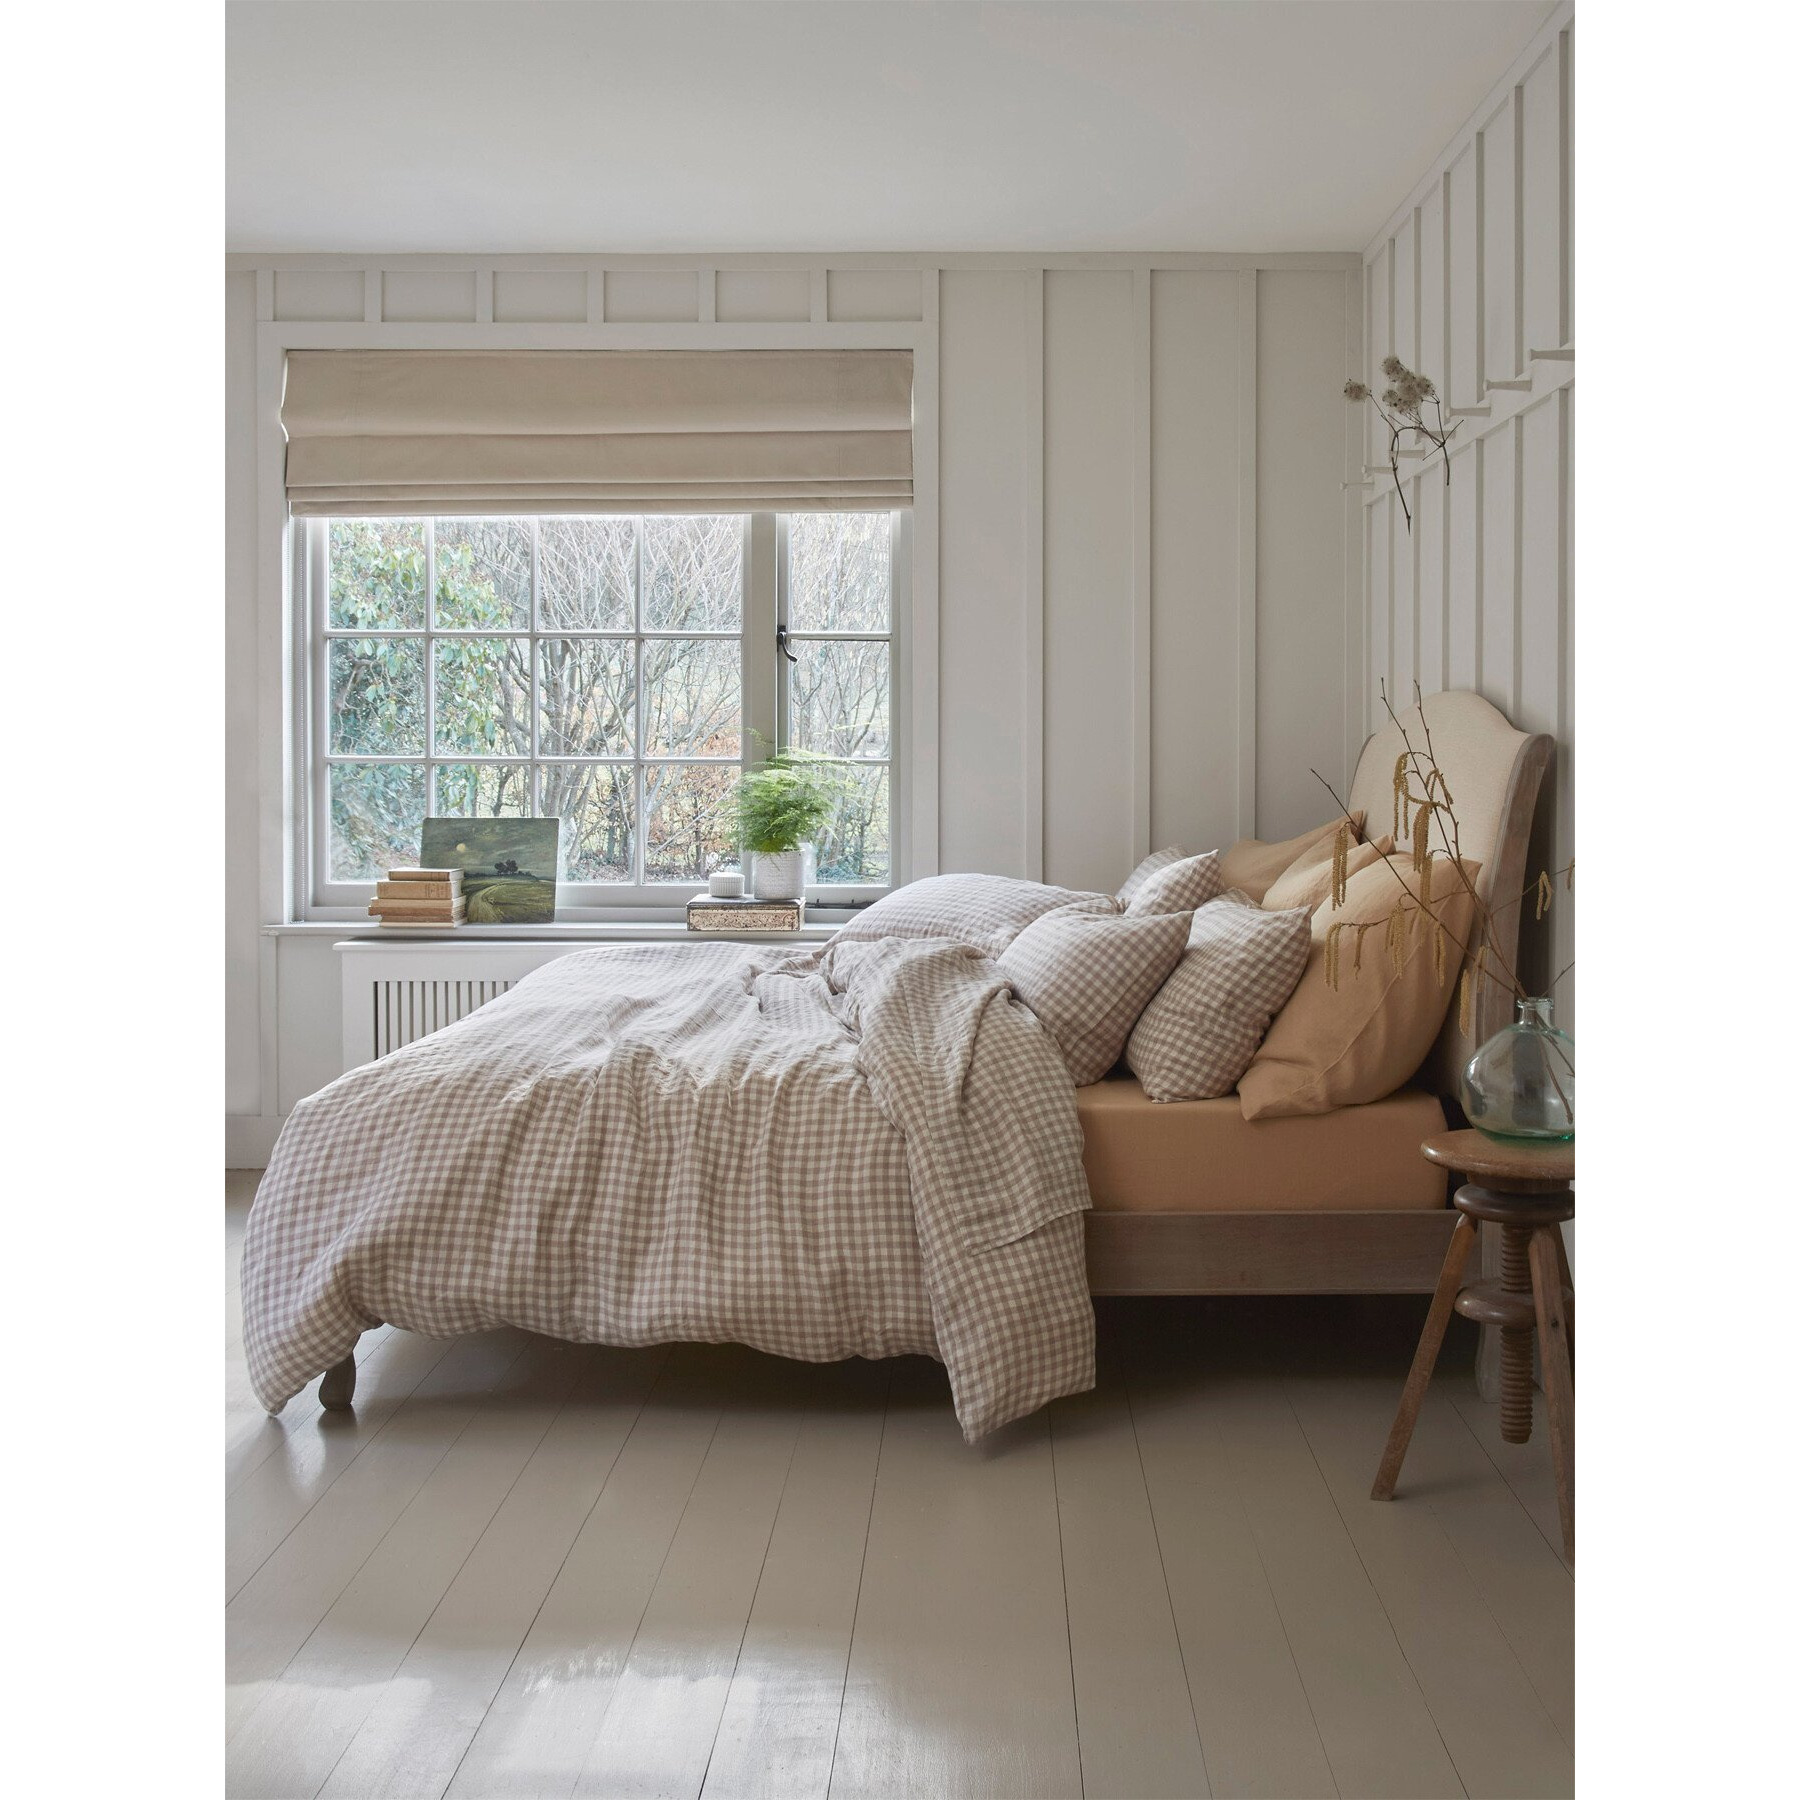 Piglet in Bed Gingham Linen Duvet Cover - Size Super King Neutral - image 1